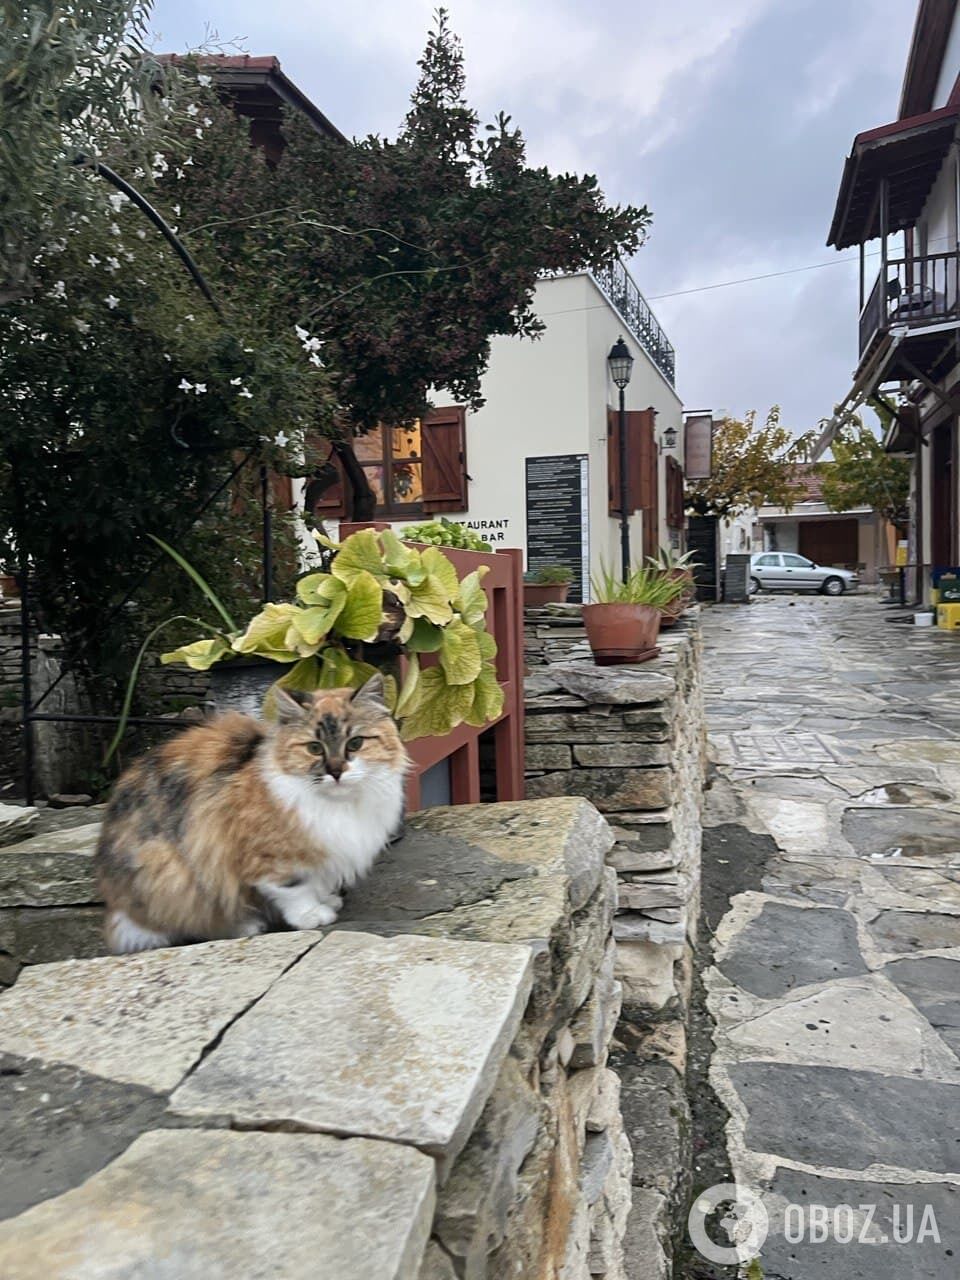 Кошки – один из главных символов Кипра